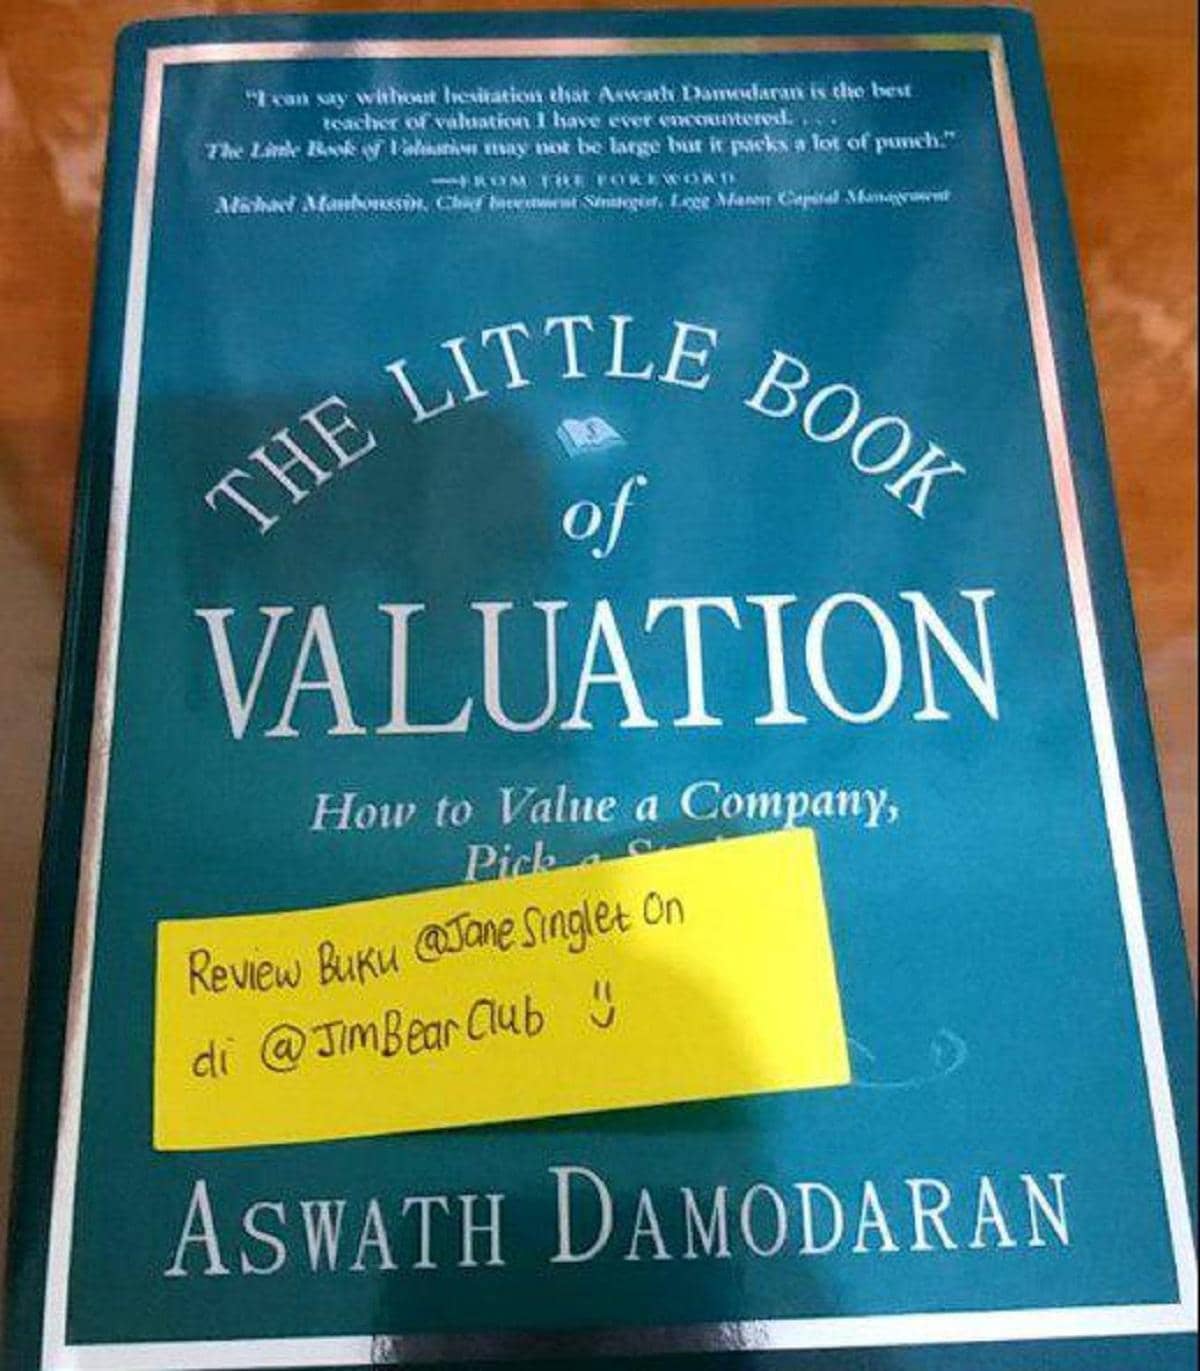 Bedah Buku : The Little Book of Valuation